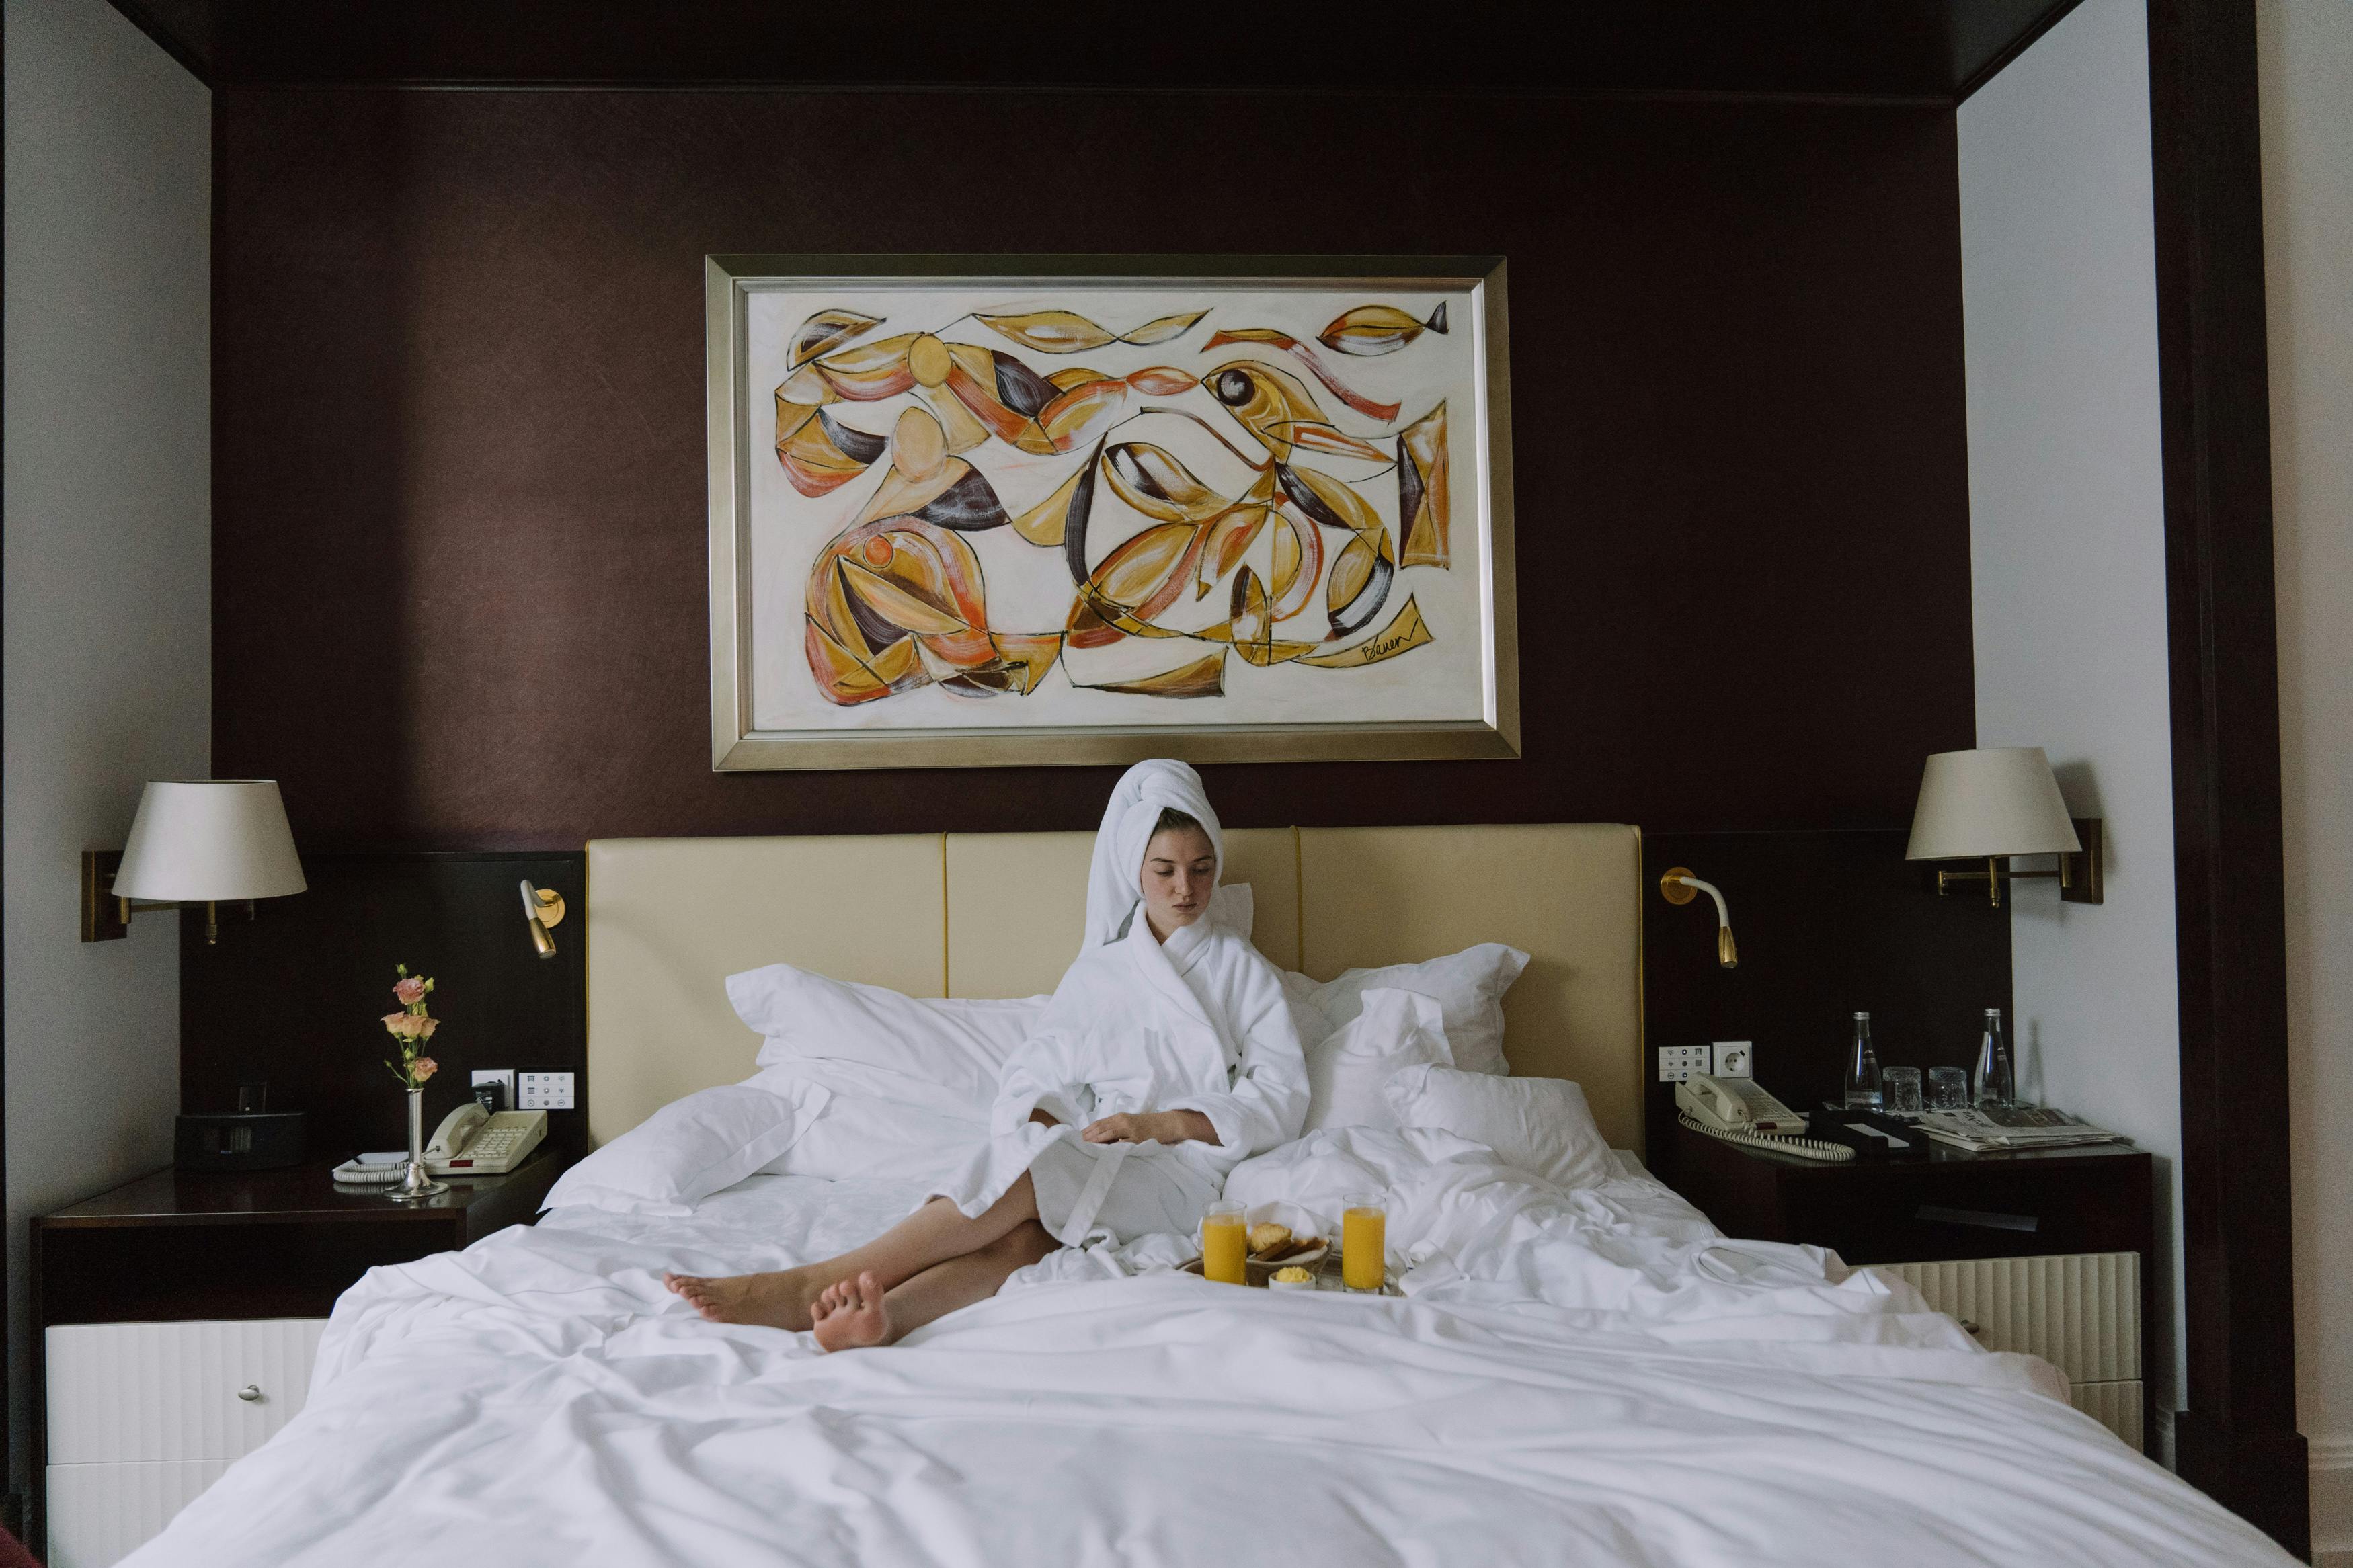 Une femme bouleversée assise sur le lit d'une chambre d'hôtel en peignoir | Source : Pexels